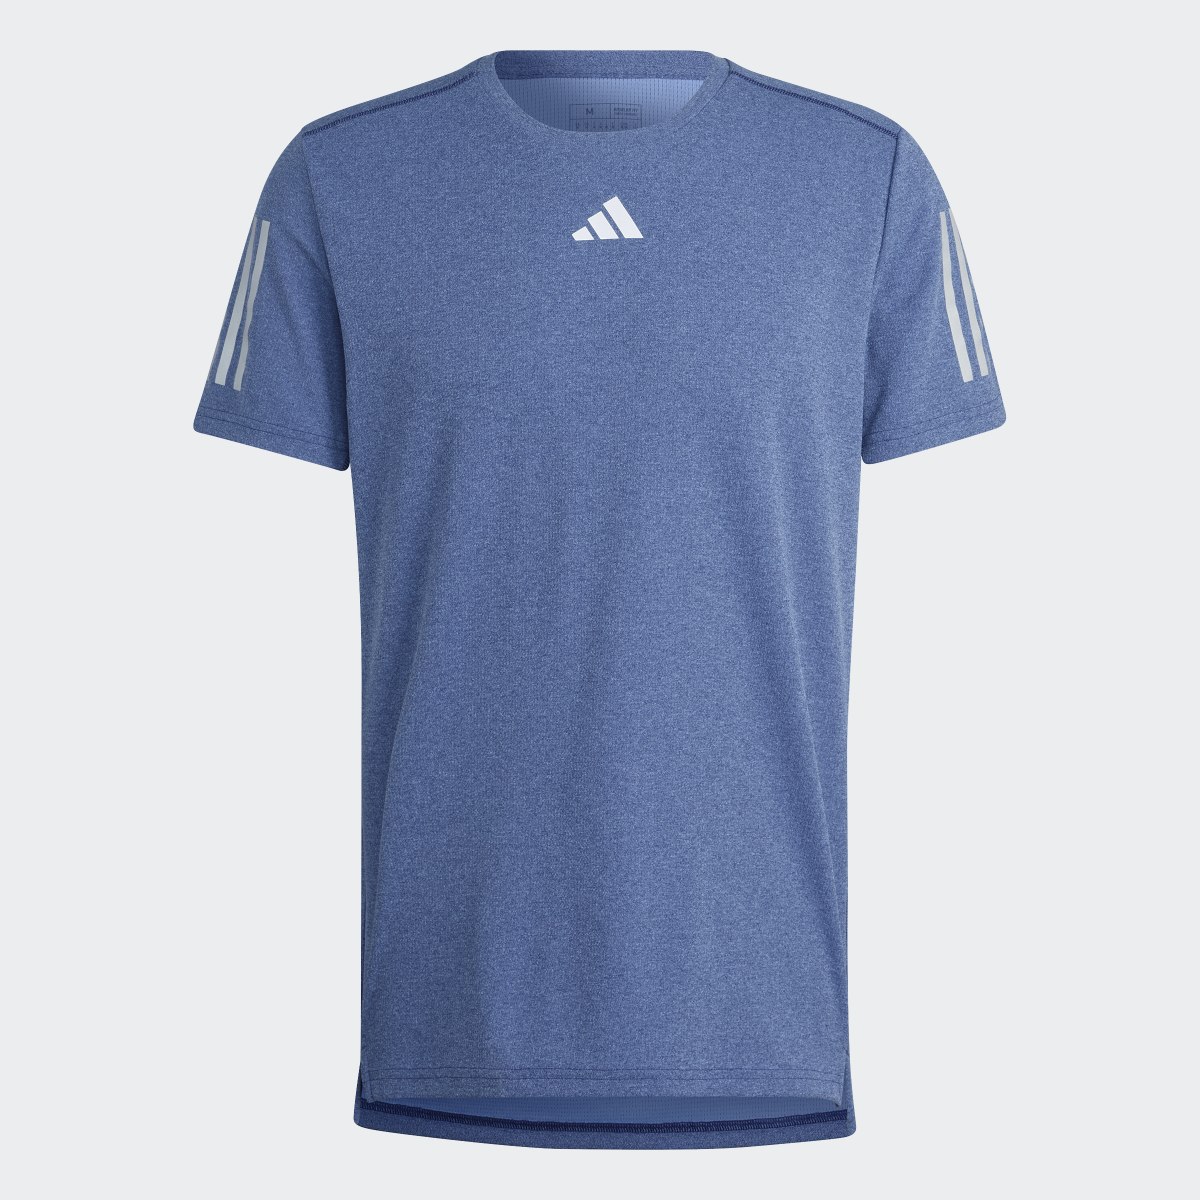 Adidas Camiseta Own the Run Heather. 5